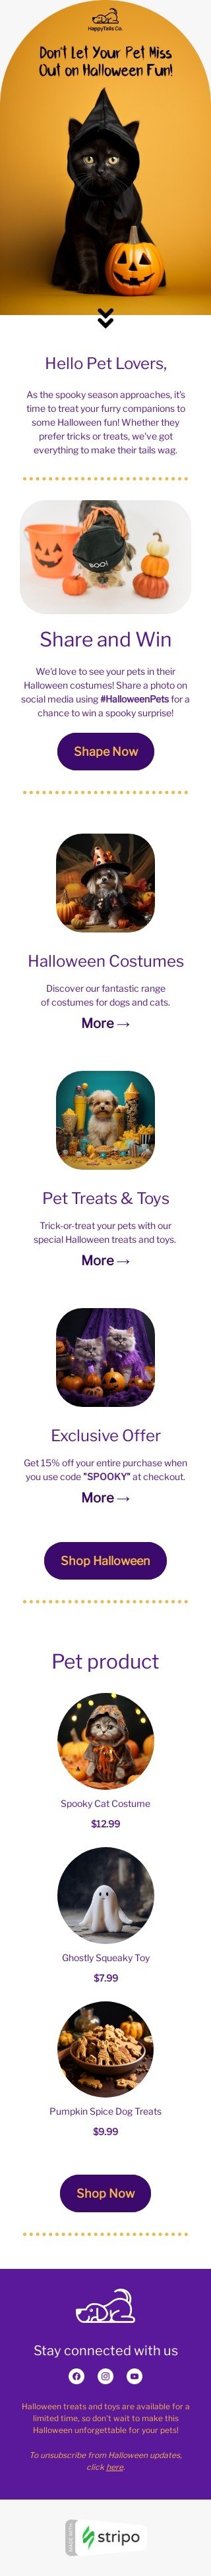 Halloween E-Mail-Vorlage «Hallo Tierliebhaber» für Haustiere-Branche Ansicht auf Mobilgeräten